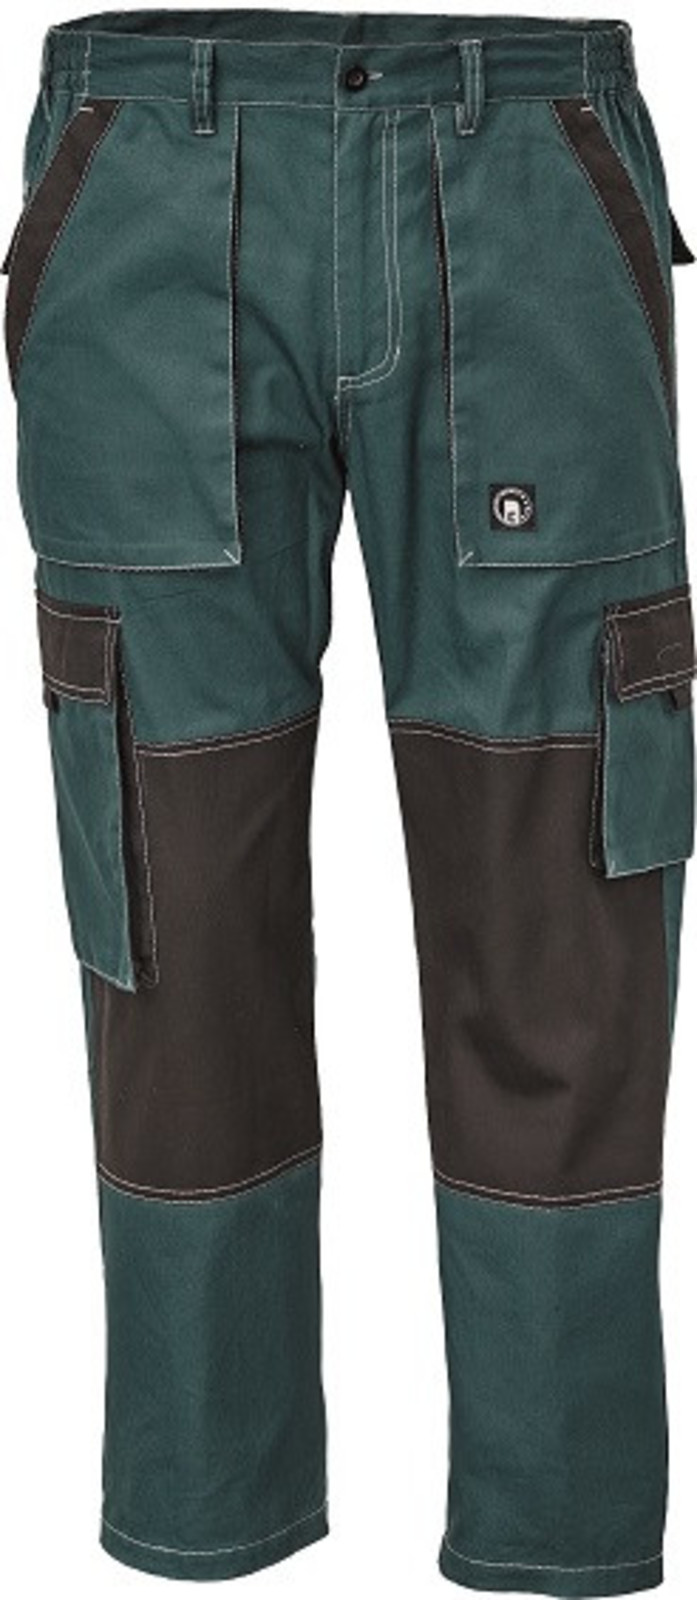 Tenšie bavlnené montérky Max Summer - veľkosť: 50, farba: zelená/čierna